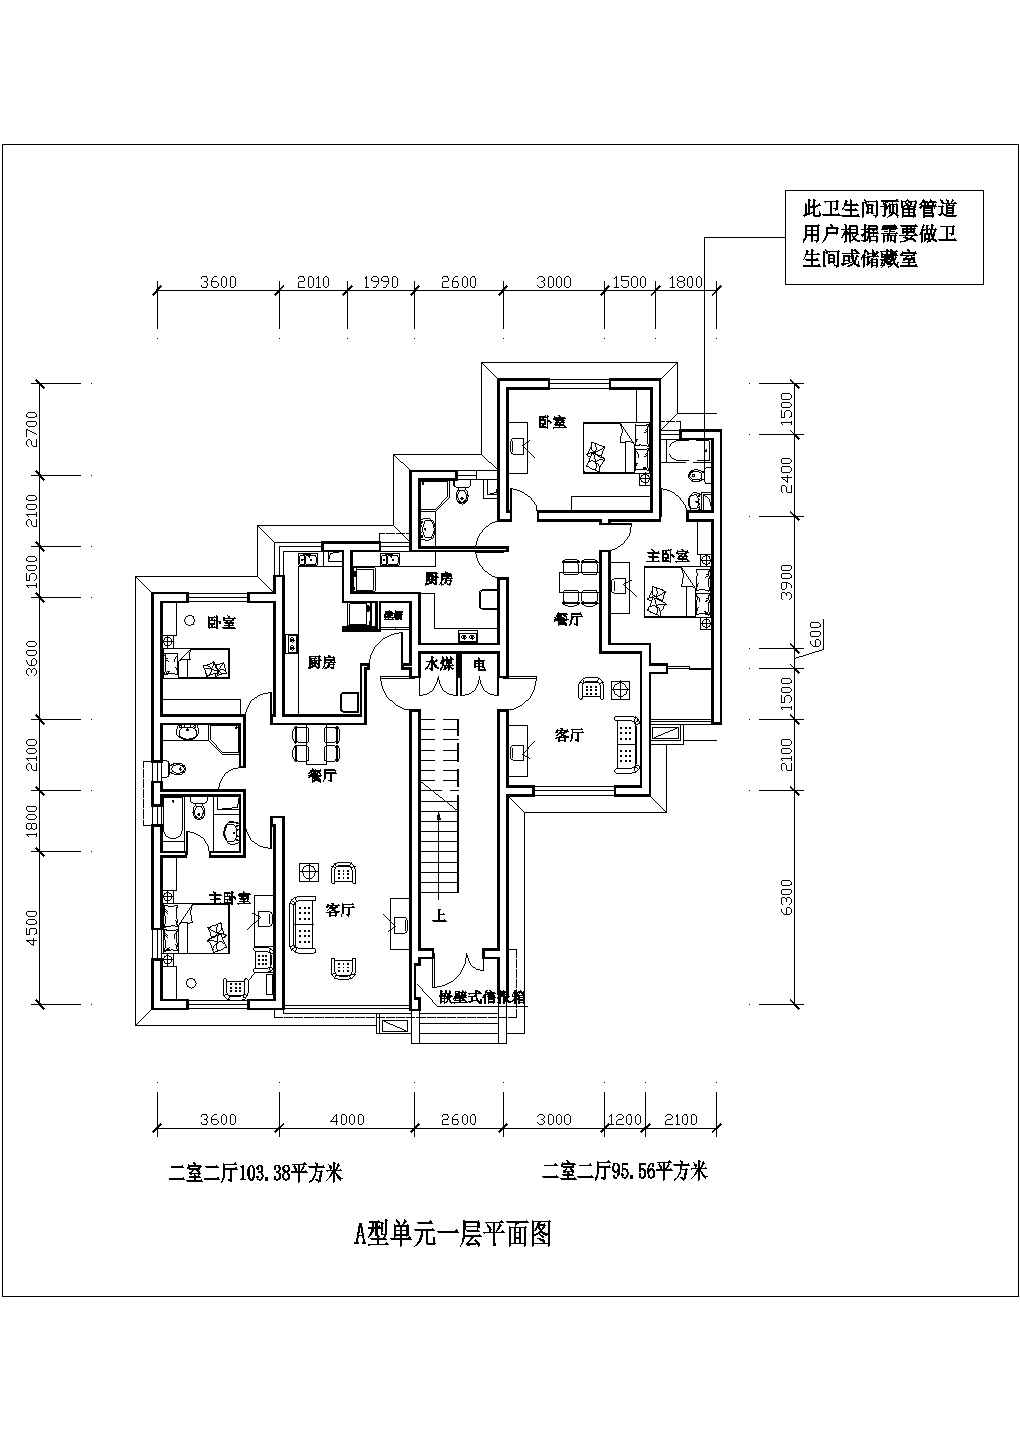 长沙市二室二厅103平米设计全套施工cad图